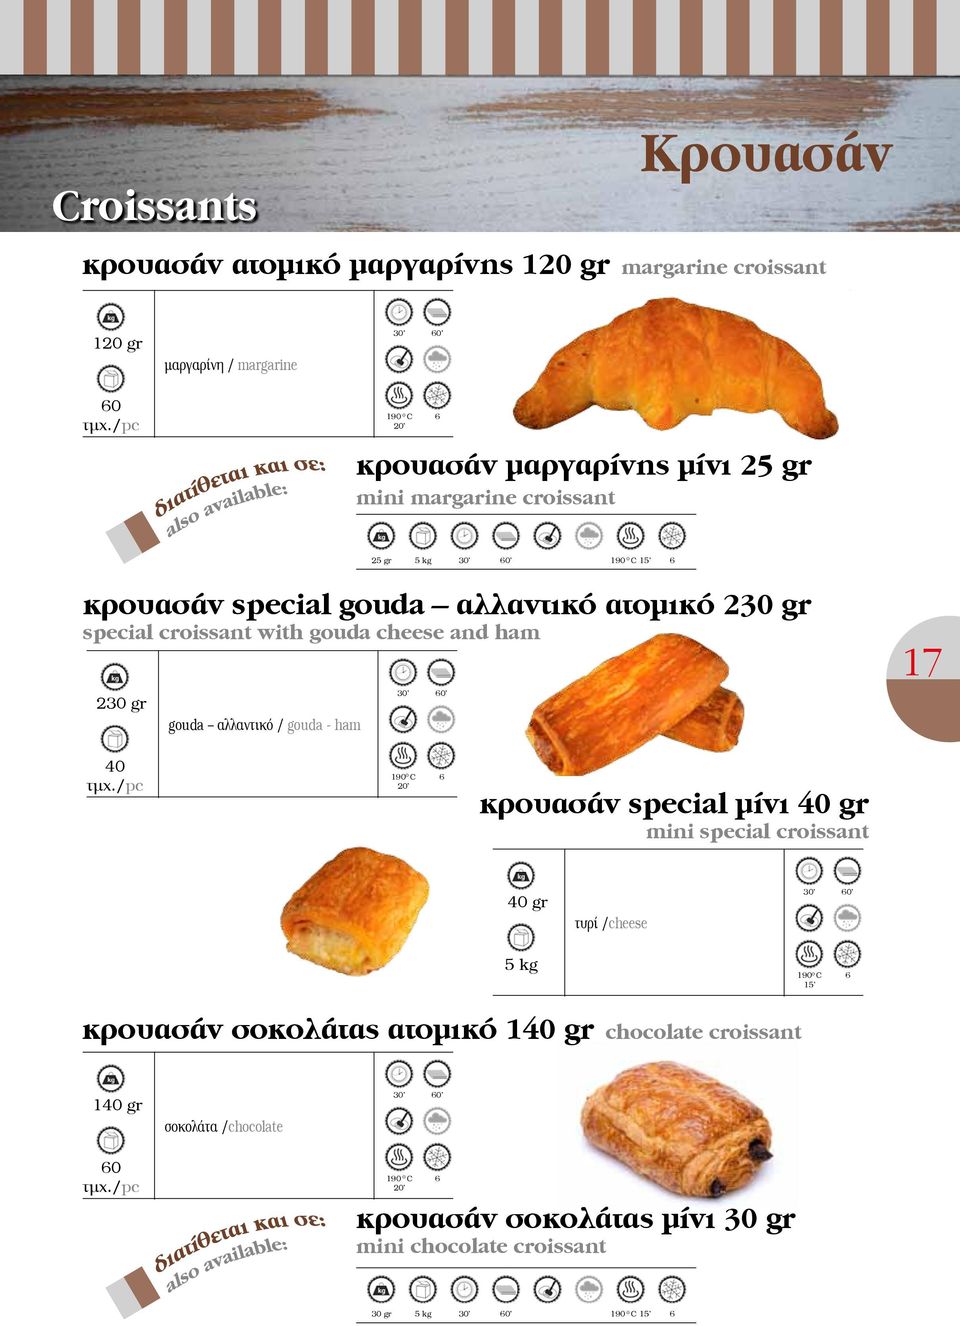 αλλαντικό / gouda - ham 30 0 17 40 190 0 C 20 κρουασάν special μίνι 40 gr mini special croissant 40 gr τυρί /cheese 30 0 5 kg 190 0 C 15 κρουασάν σοκολάτας